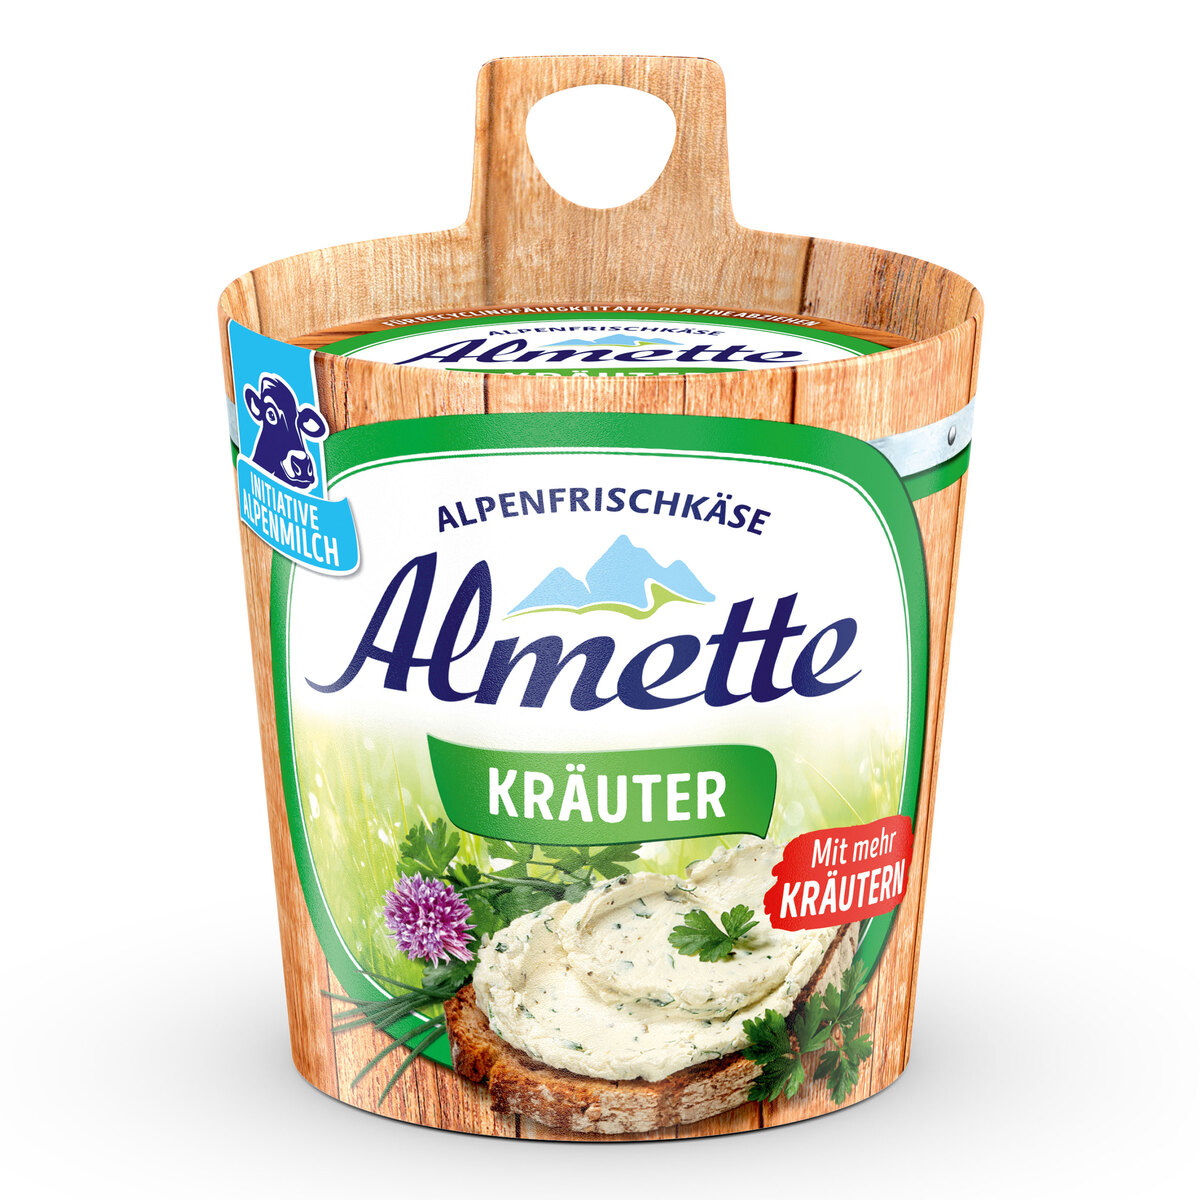 Almette Kräuter 150g